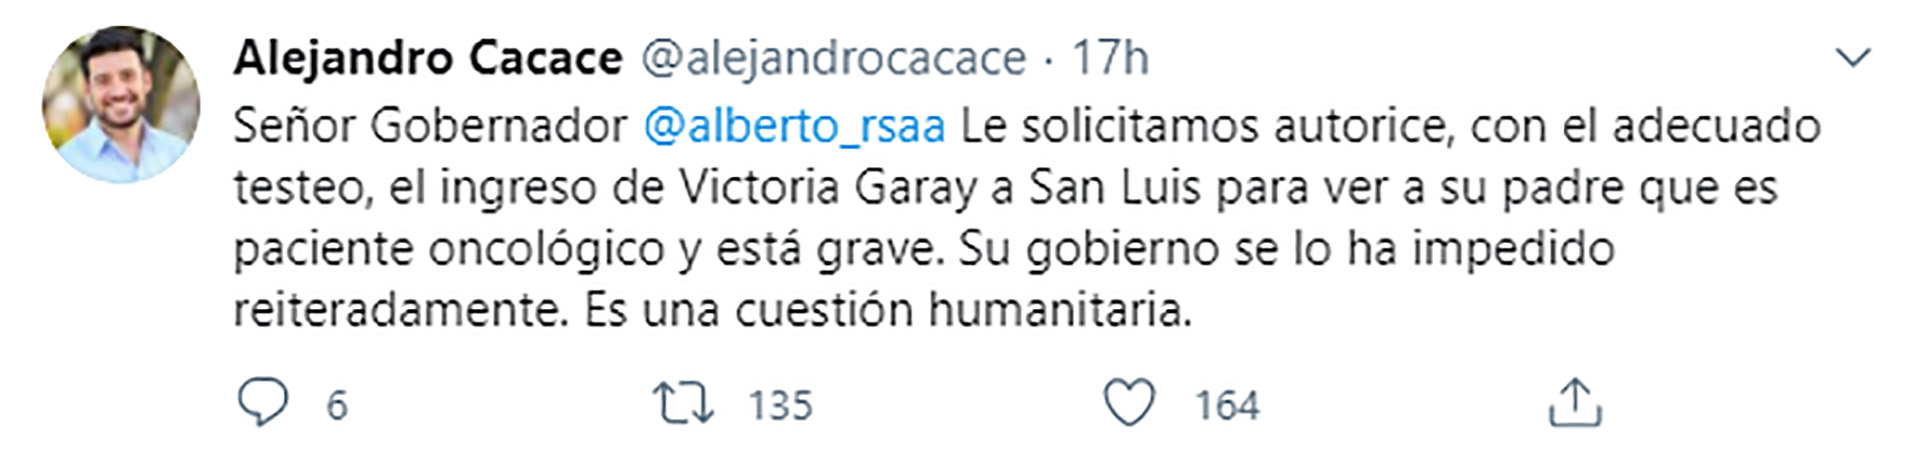 Tuit del diputado nacional por San Luis, Alejandro Cacace, para pedir por el caso de Victoria